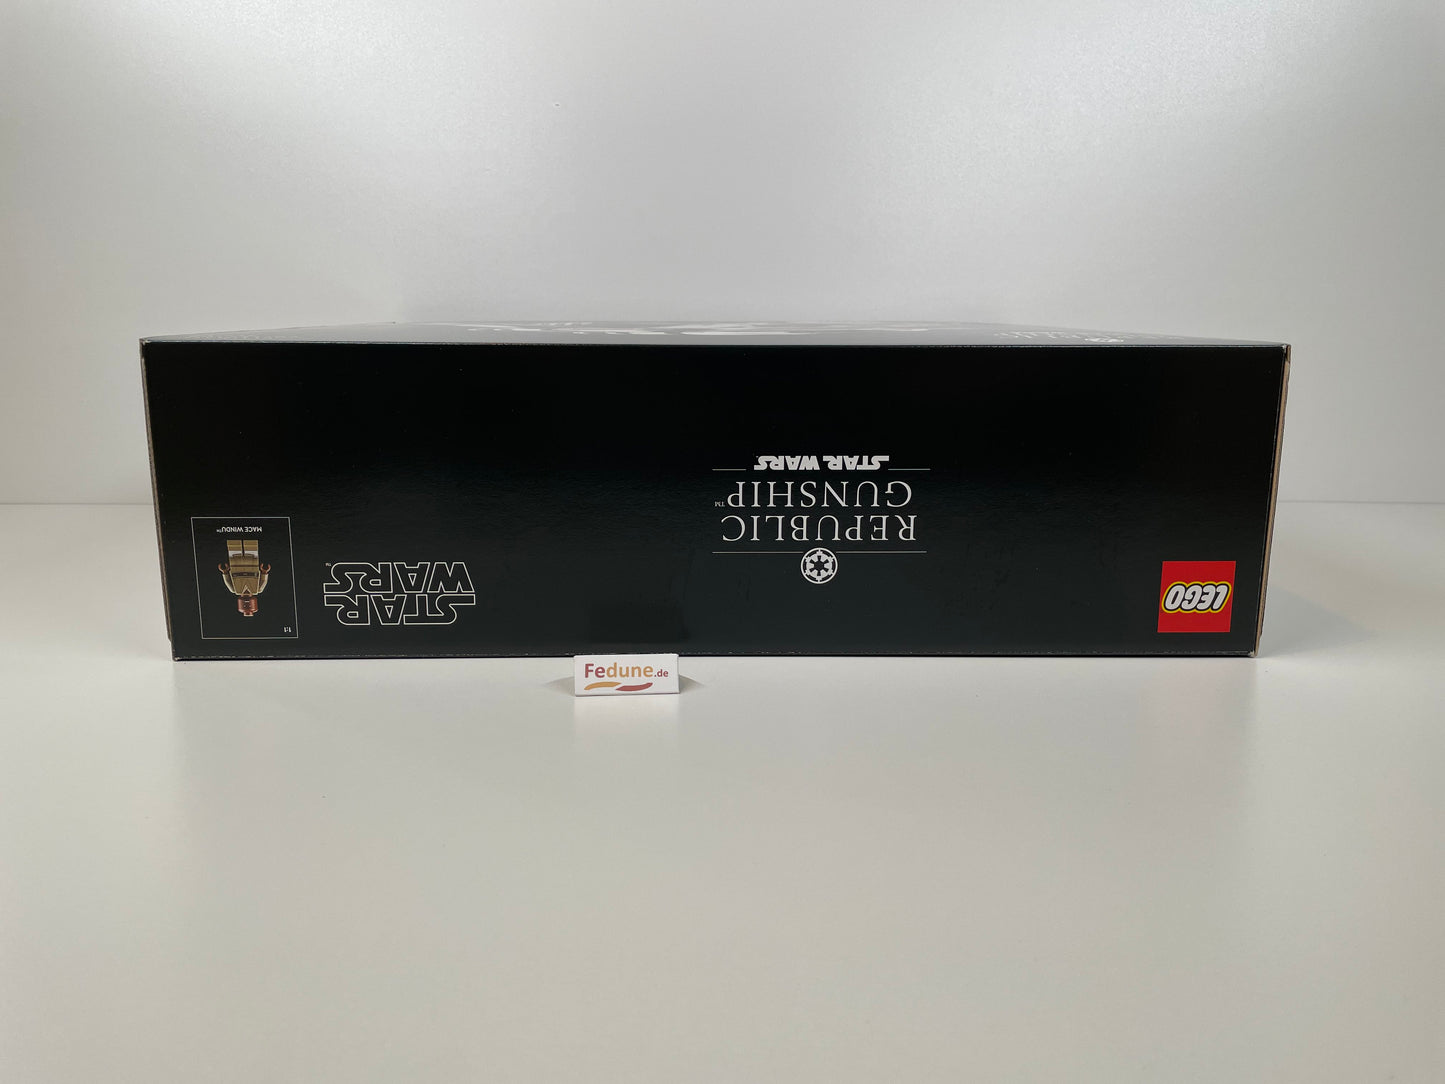 LEGO® Star Wars 75309 Republic Gunship™ Fehldruck